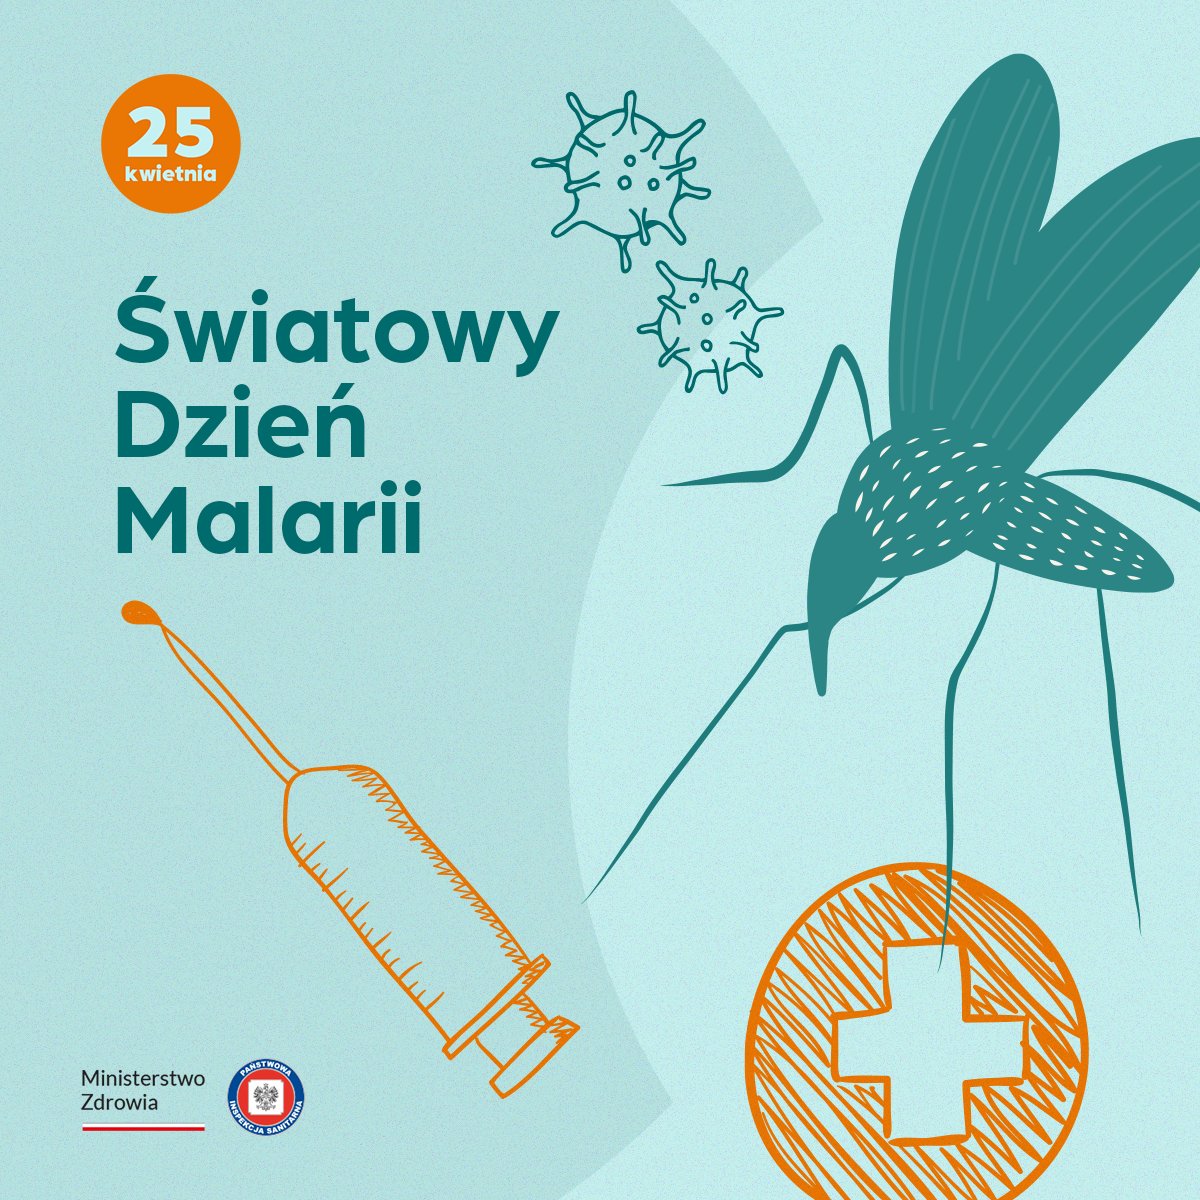 🗓️Dziś Światowy Dzień Malarii. Jeśli planujesz podróż do krajów tropikalnych, zaplanuj profilaktykę. Sprawdź też, czy potrzebujesz szczepień ochronnych przeciw innym chorobom tropikalnym.👩‍⚕️Skontaktuj się z lekarzem chorób zakaźnych, medycyny tropikalnej/ medycyny podróży #eiw2024